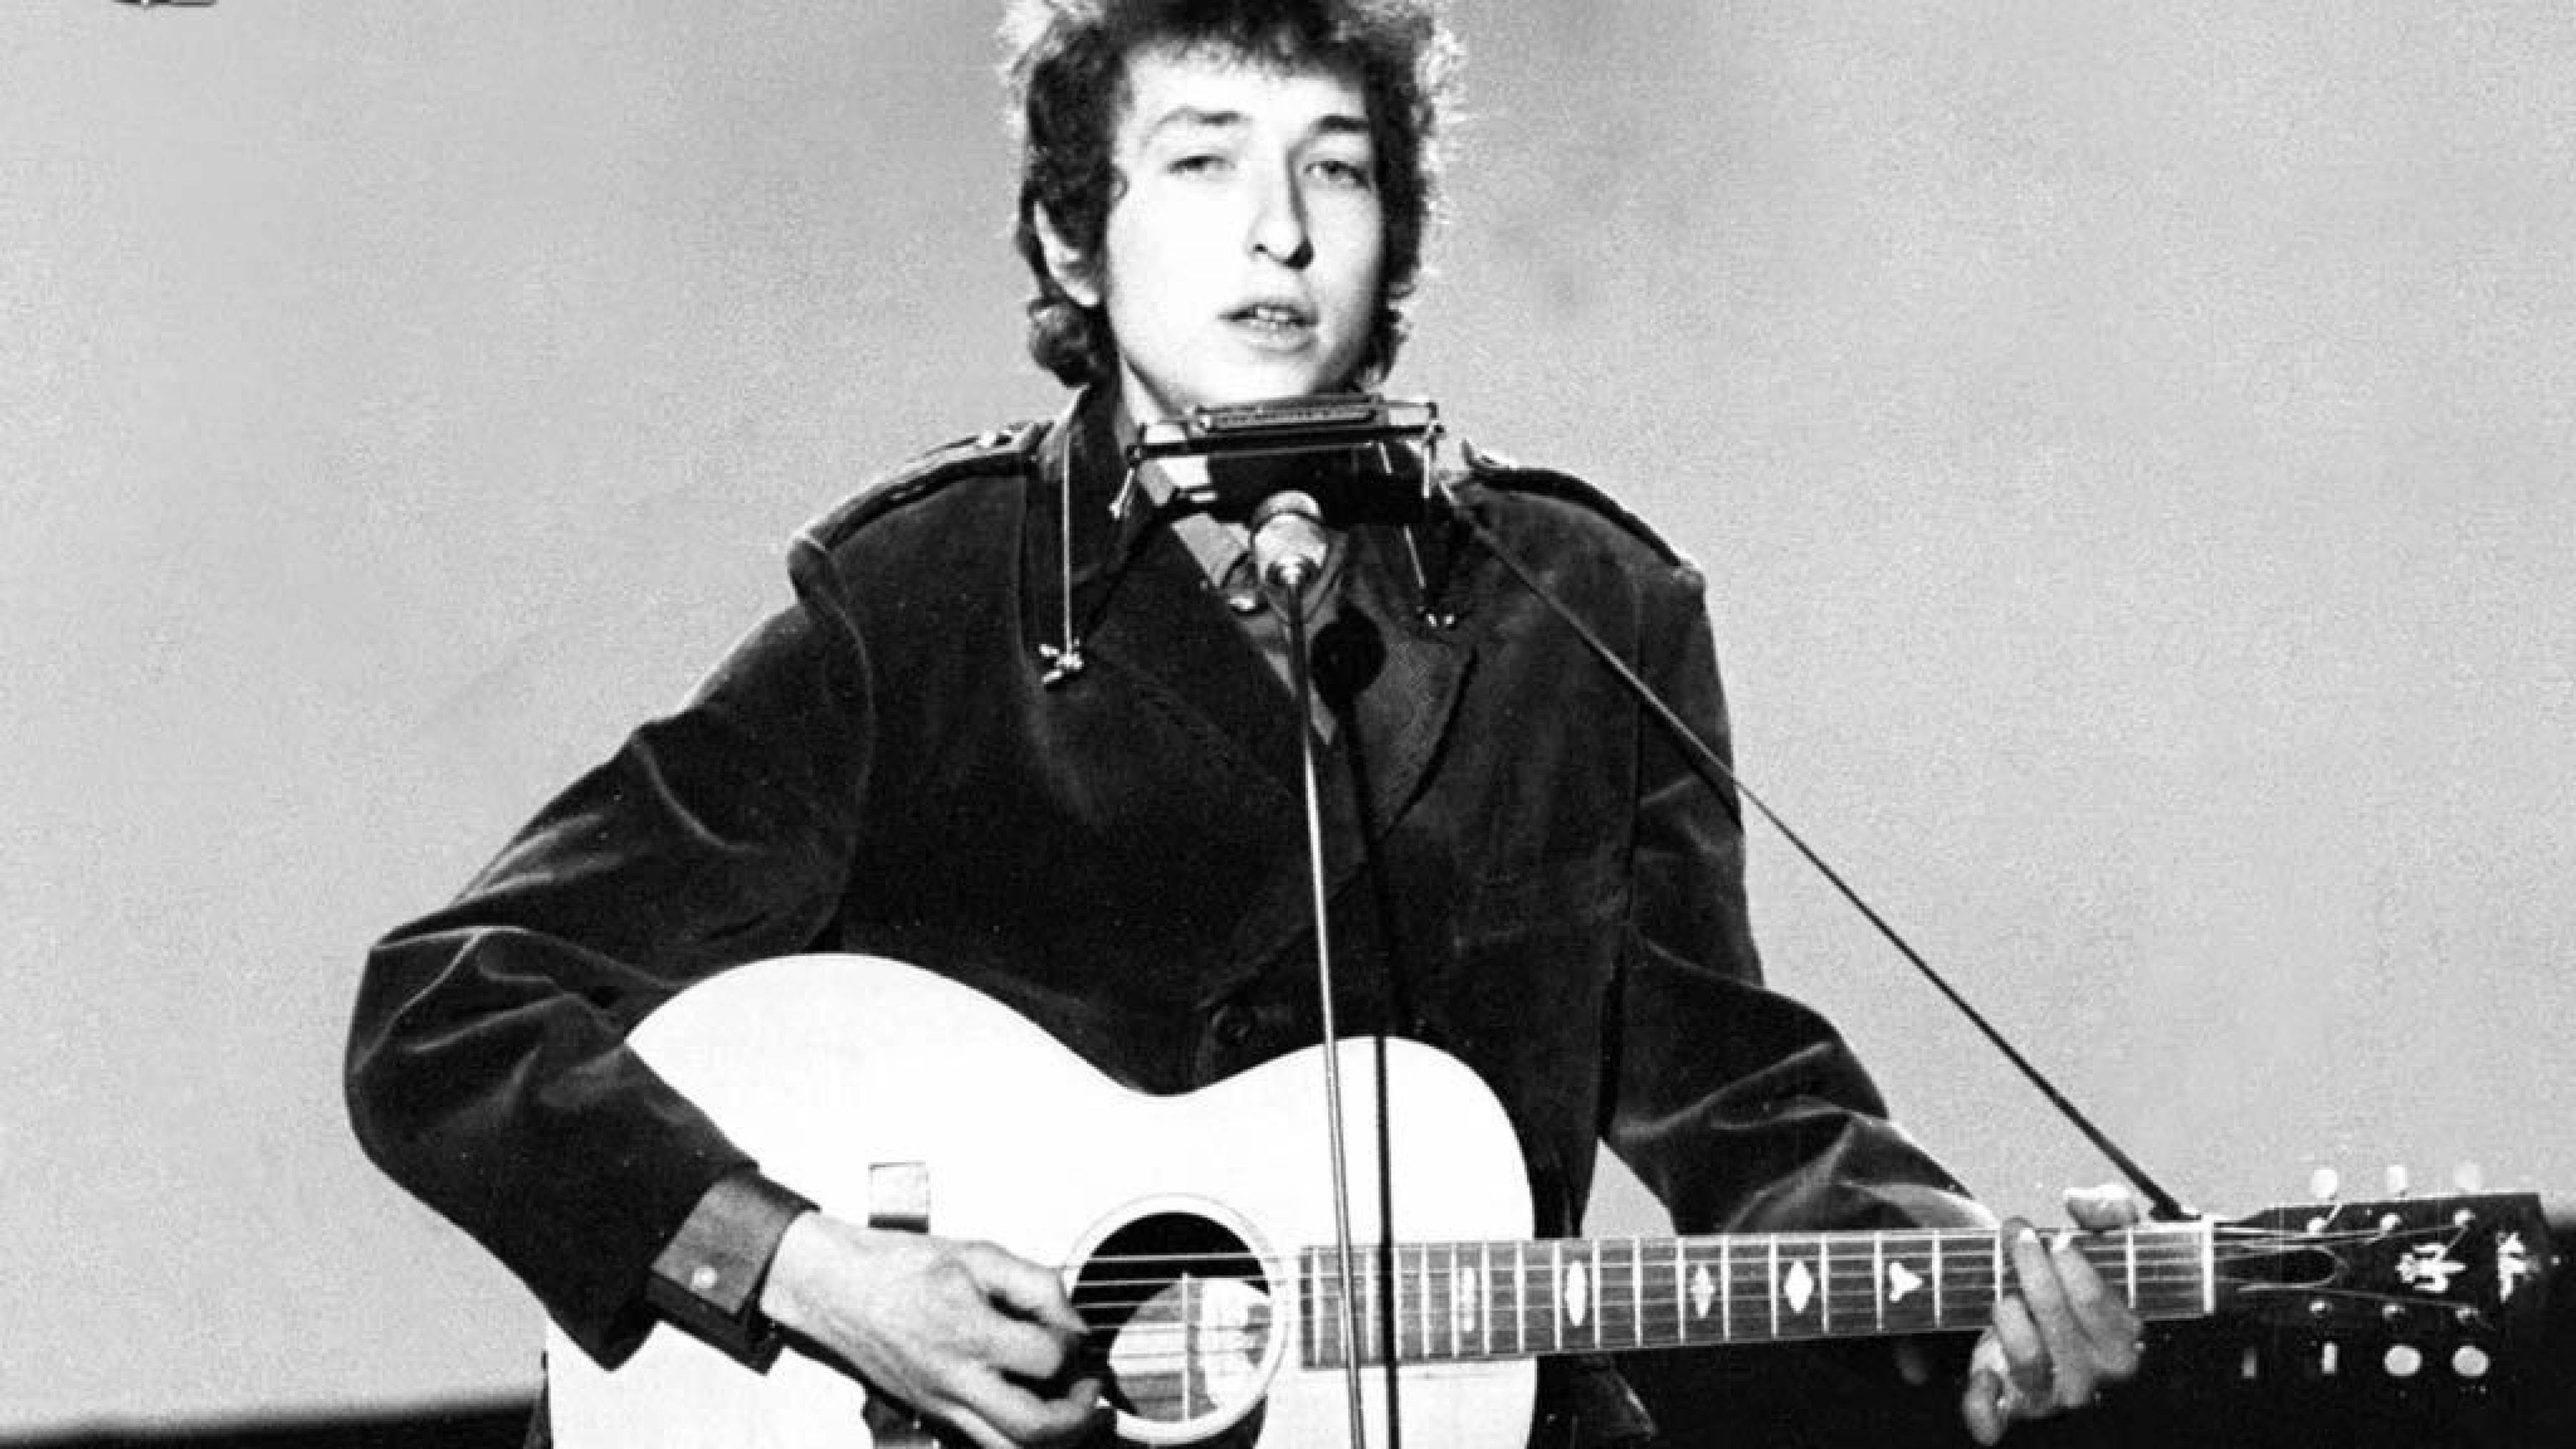 Bob Dylan: Born Robert Allen Zimmerman, An American singer-songwriter. 3840x2160 4K Wallpaper.